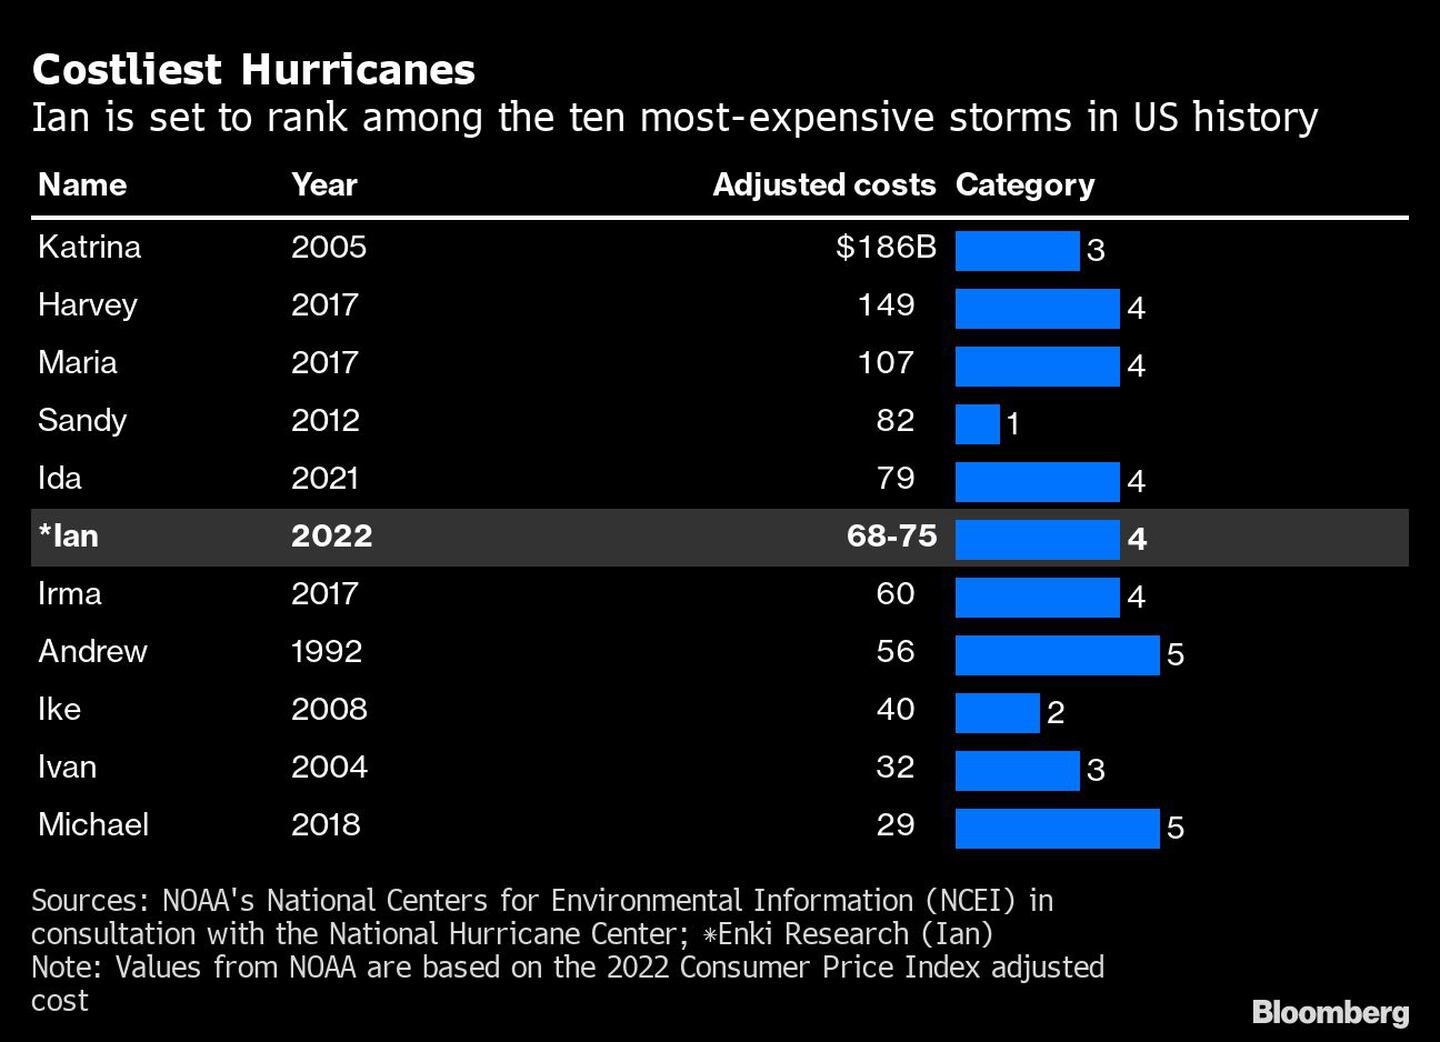 Ian se ubica entre las tormentas que más costaron en la historia de EE.UU.dfd